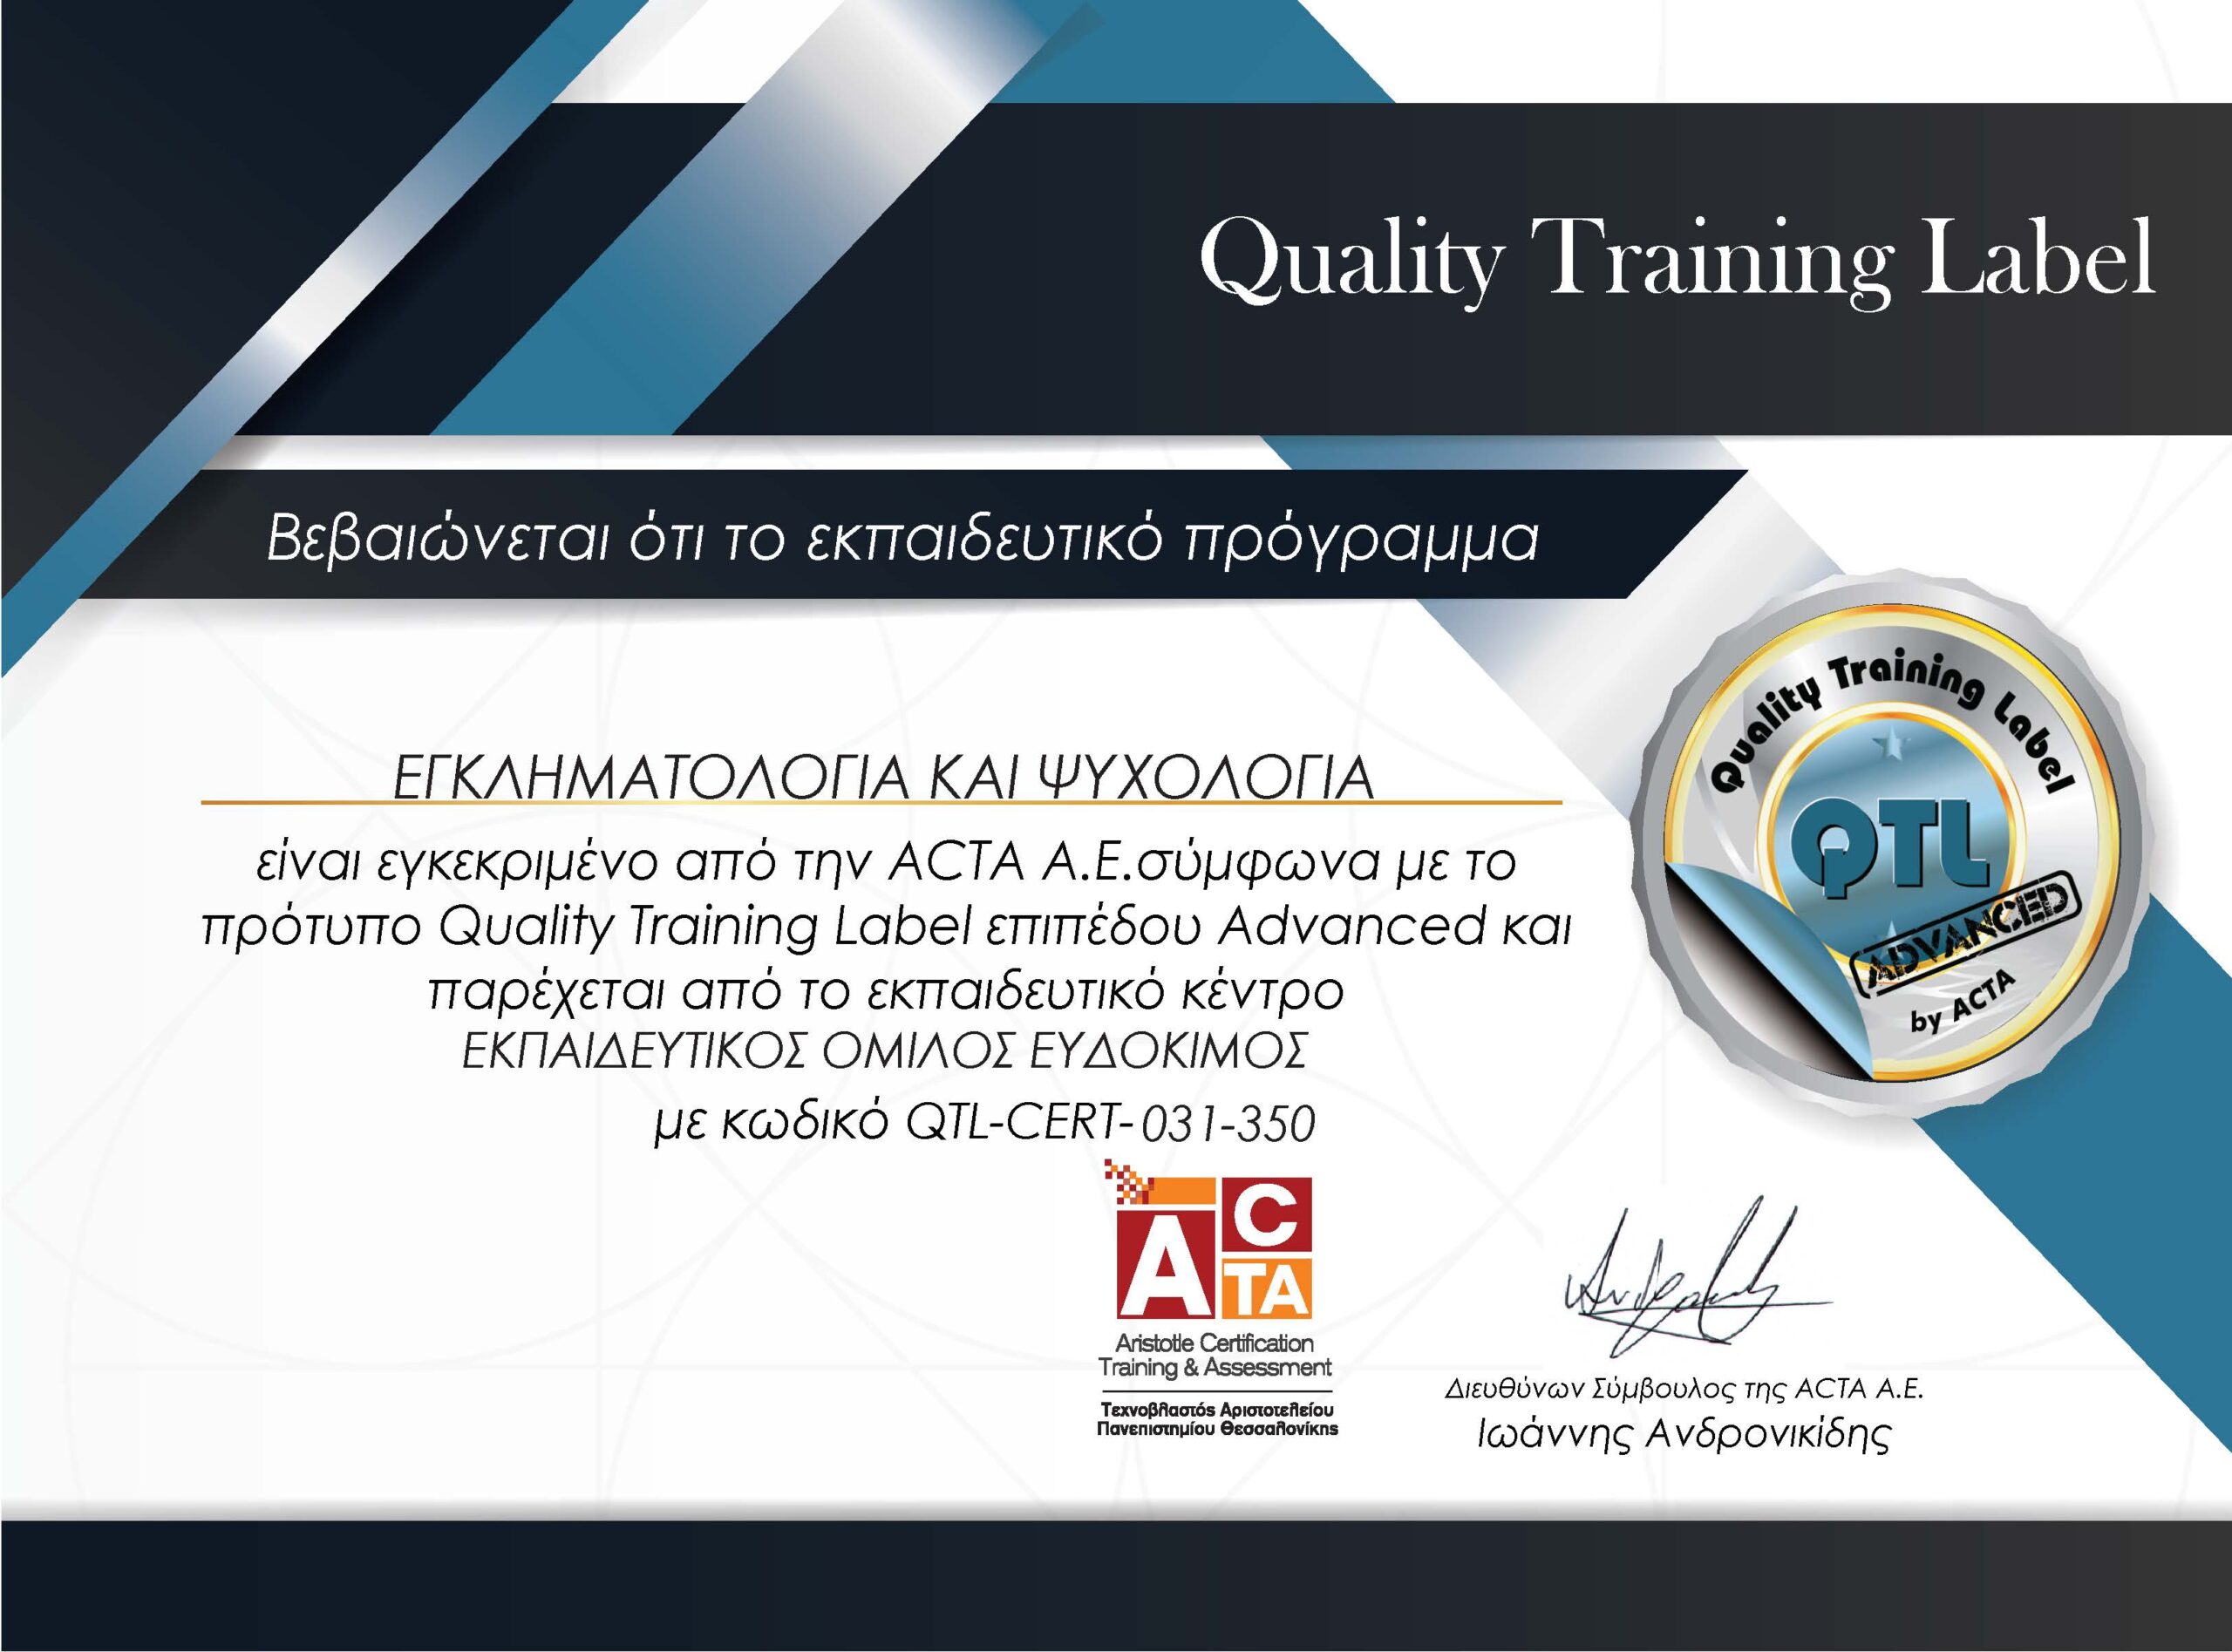 Εγκληματολογία και ψυχολογία - Πιστοποιημένο εκπαιδευτικό πρόγραμμα της ACTA σύμφωνα με το πρότυπο QTL επιπέδου Advanced